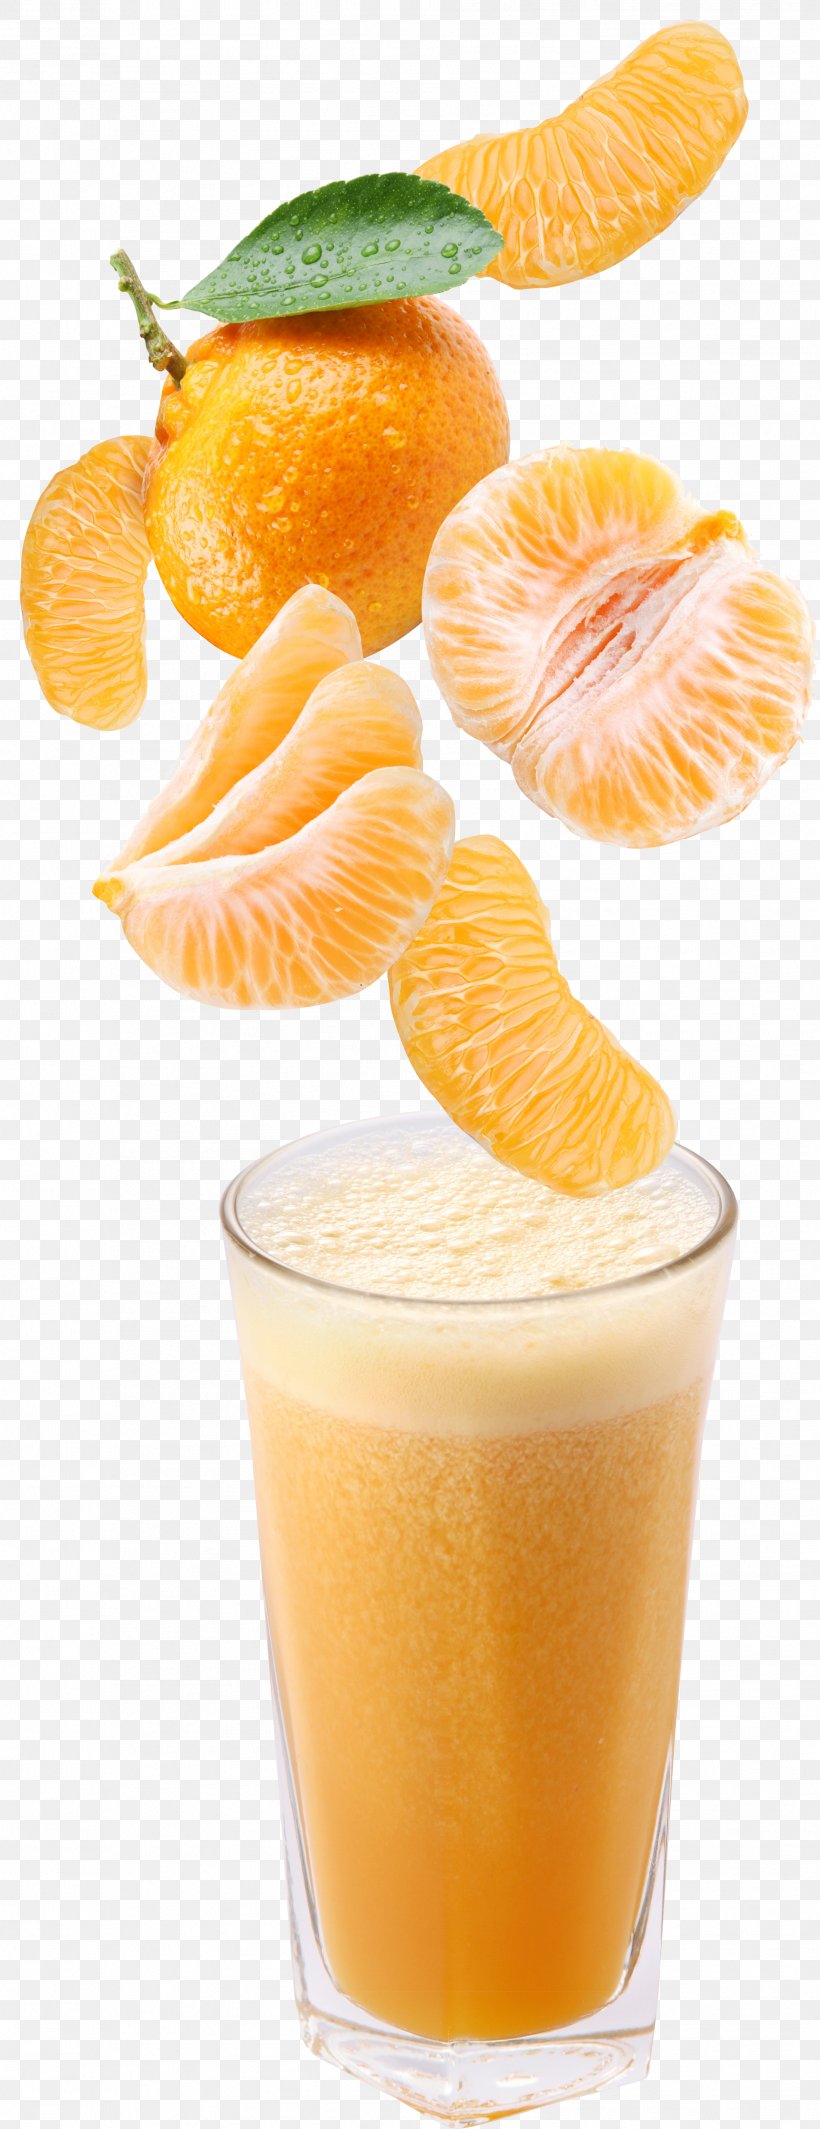 Orange Drink Orange Juice Cocktail Fruit, PNG, 1908x4954px, Orange Drink, Citric Acid, Citrus, Cocktail, Cocktail Garnish Download Free